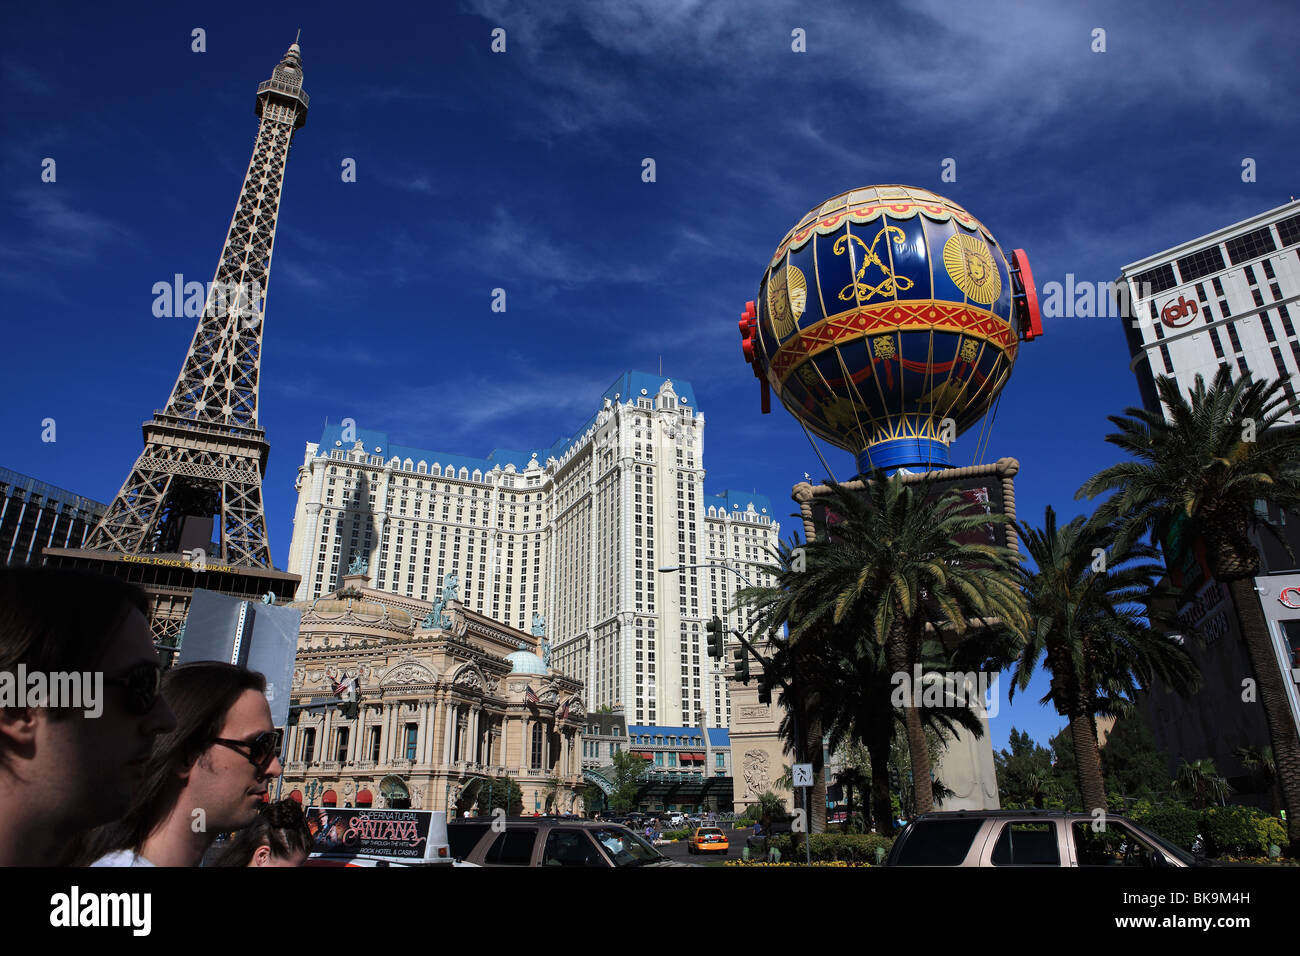 Paris Las Vegas hotel & Casino situated on Las Vegas Strip, Paradise, Nevada, USA Stock Photo